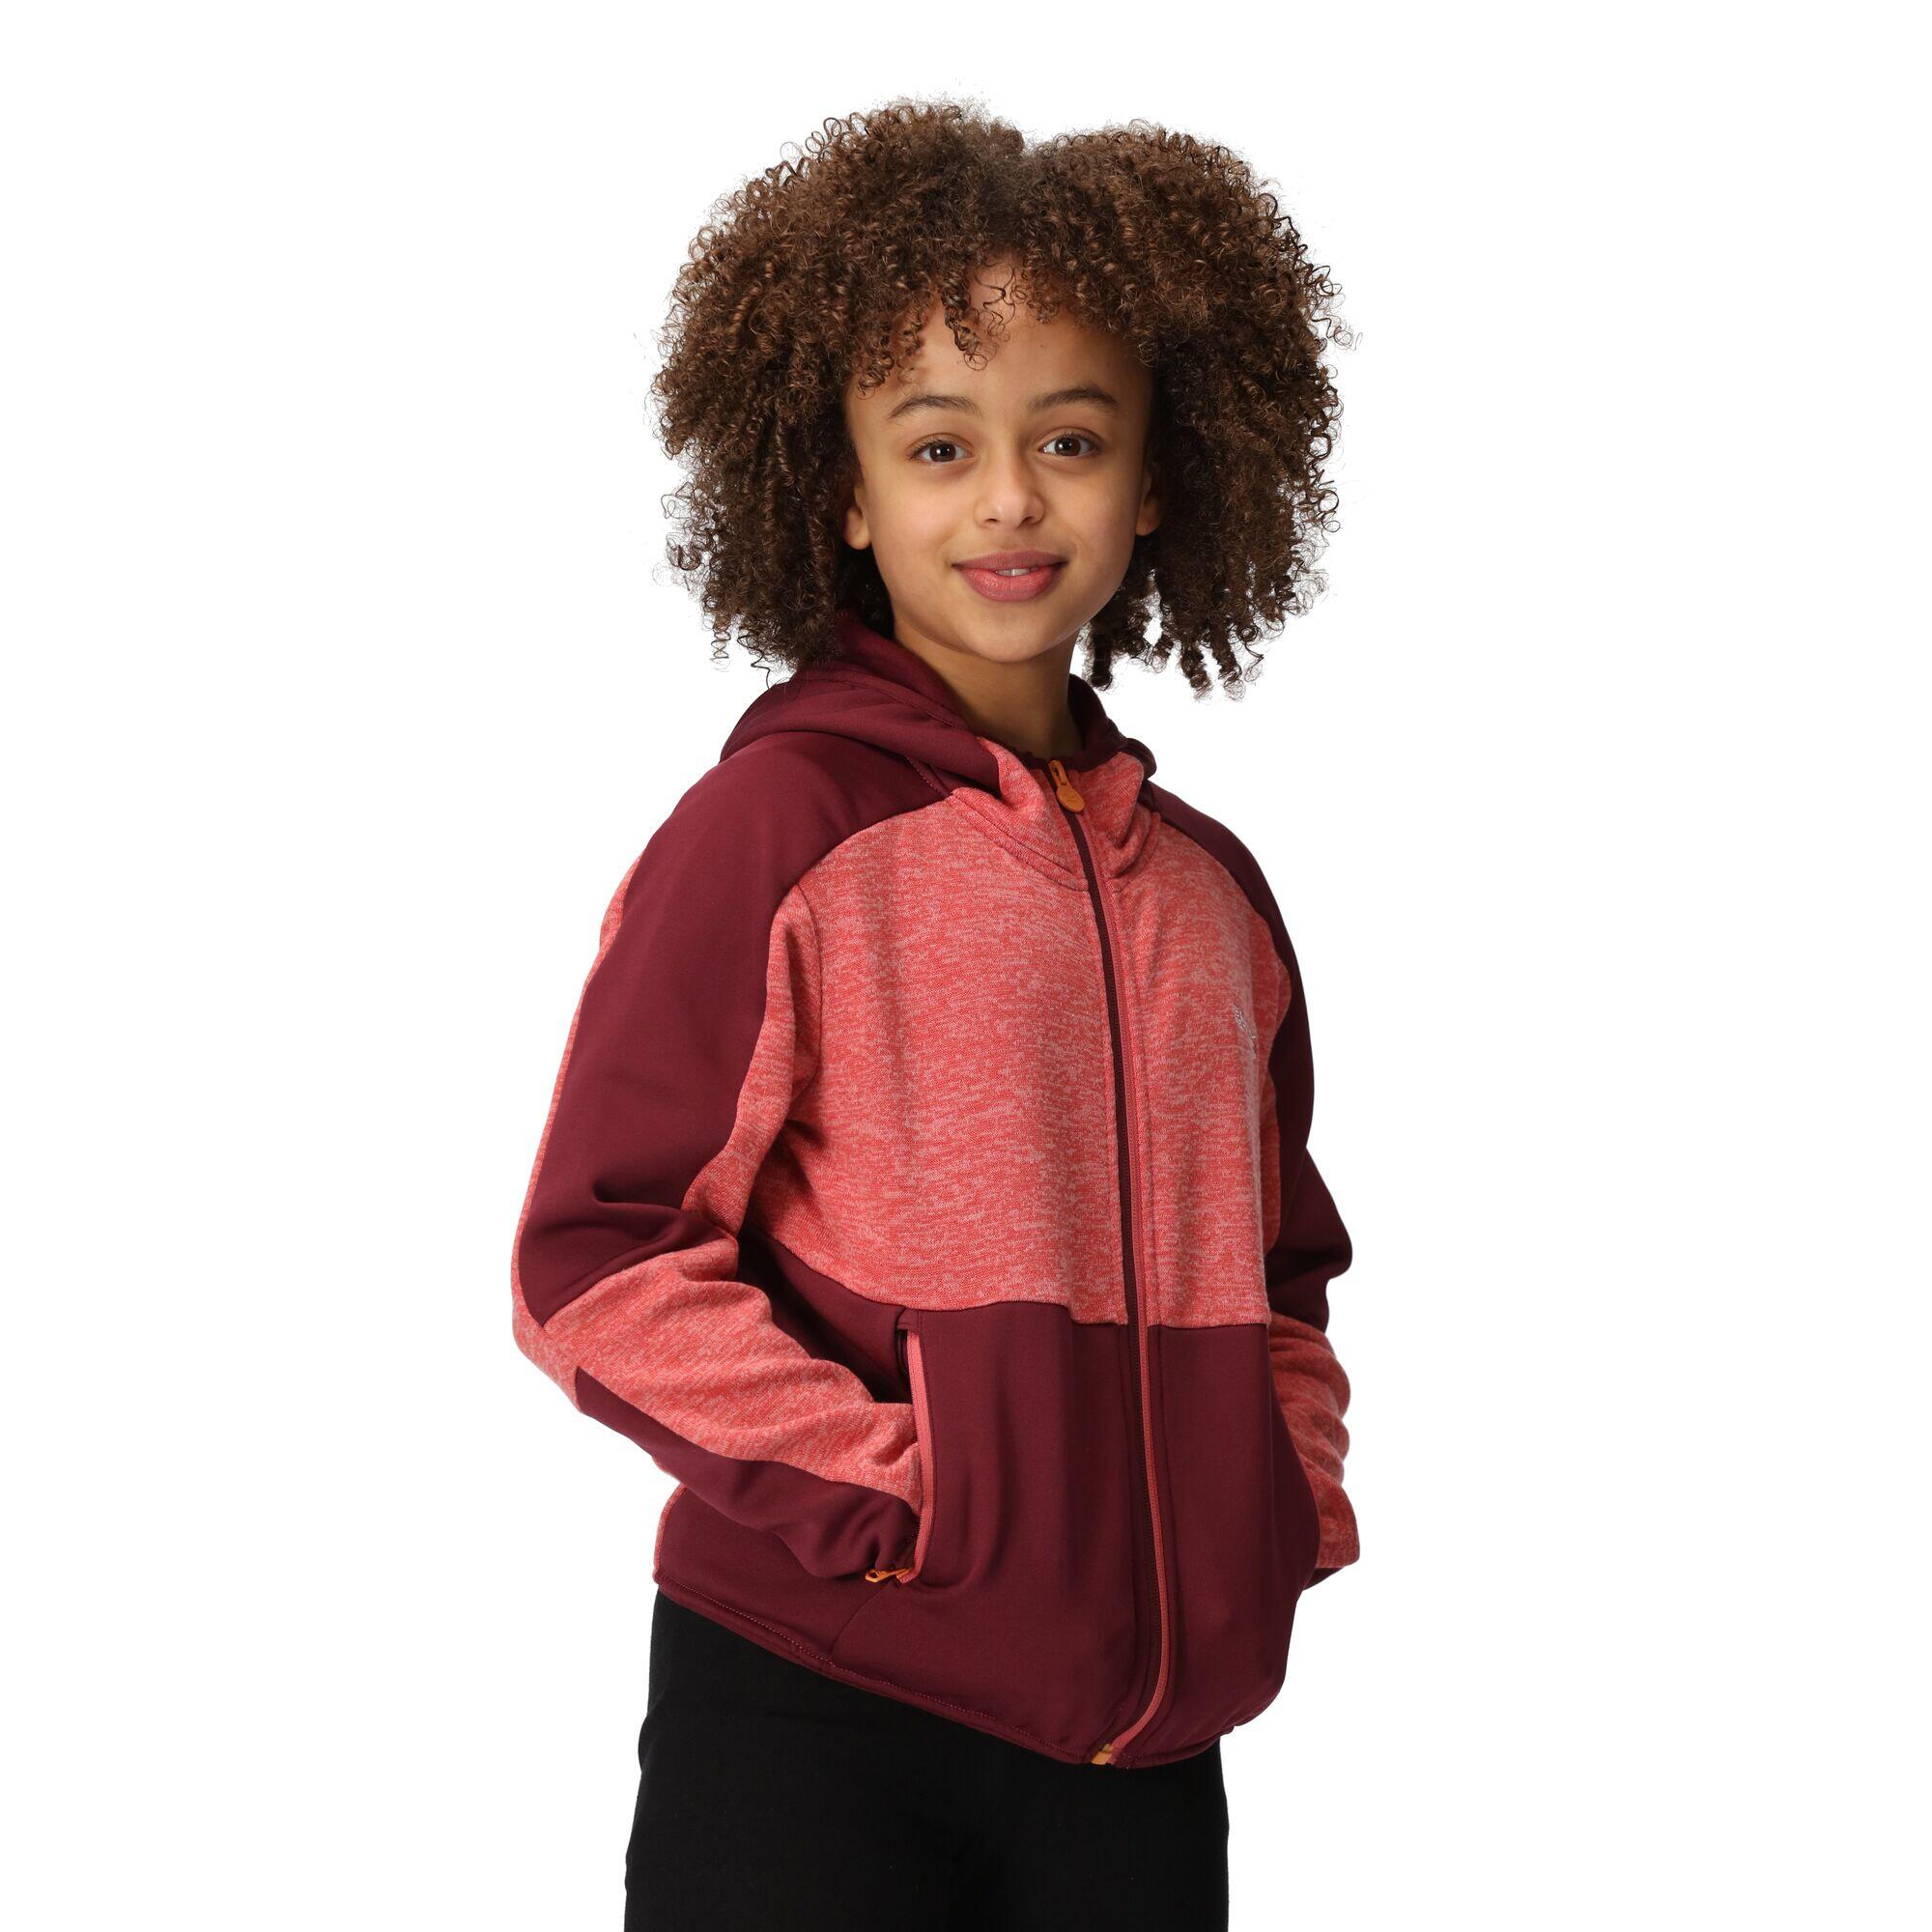 Childrens/Kids Dissolver VII Full Zip Fleece Jacket (Mineral Red/Burgundy) 4/5